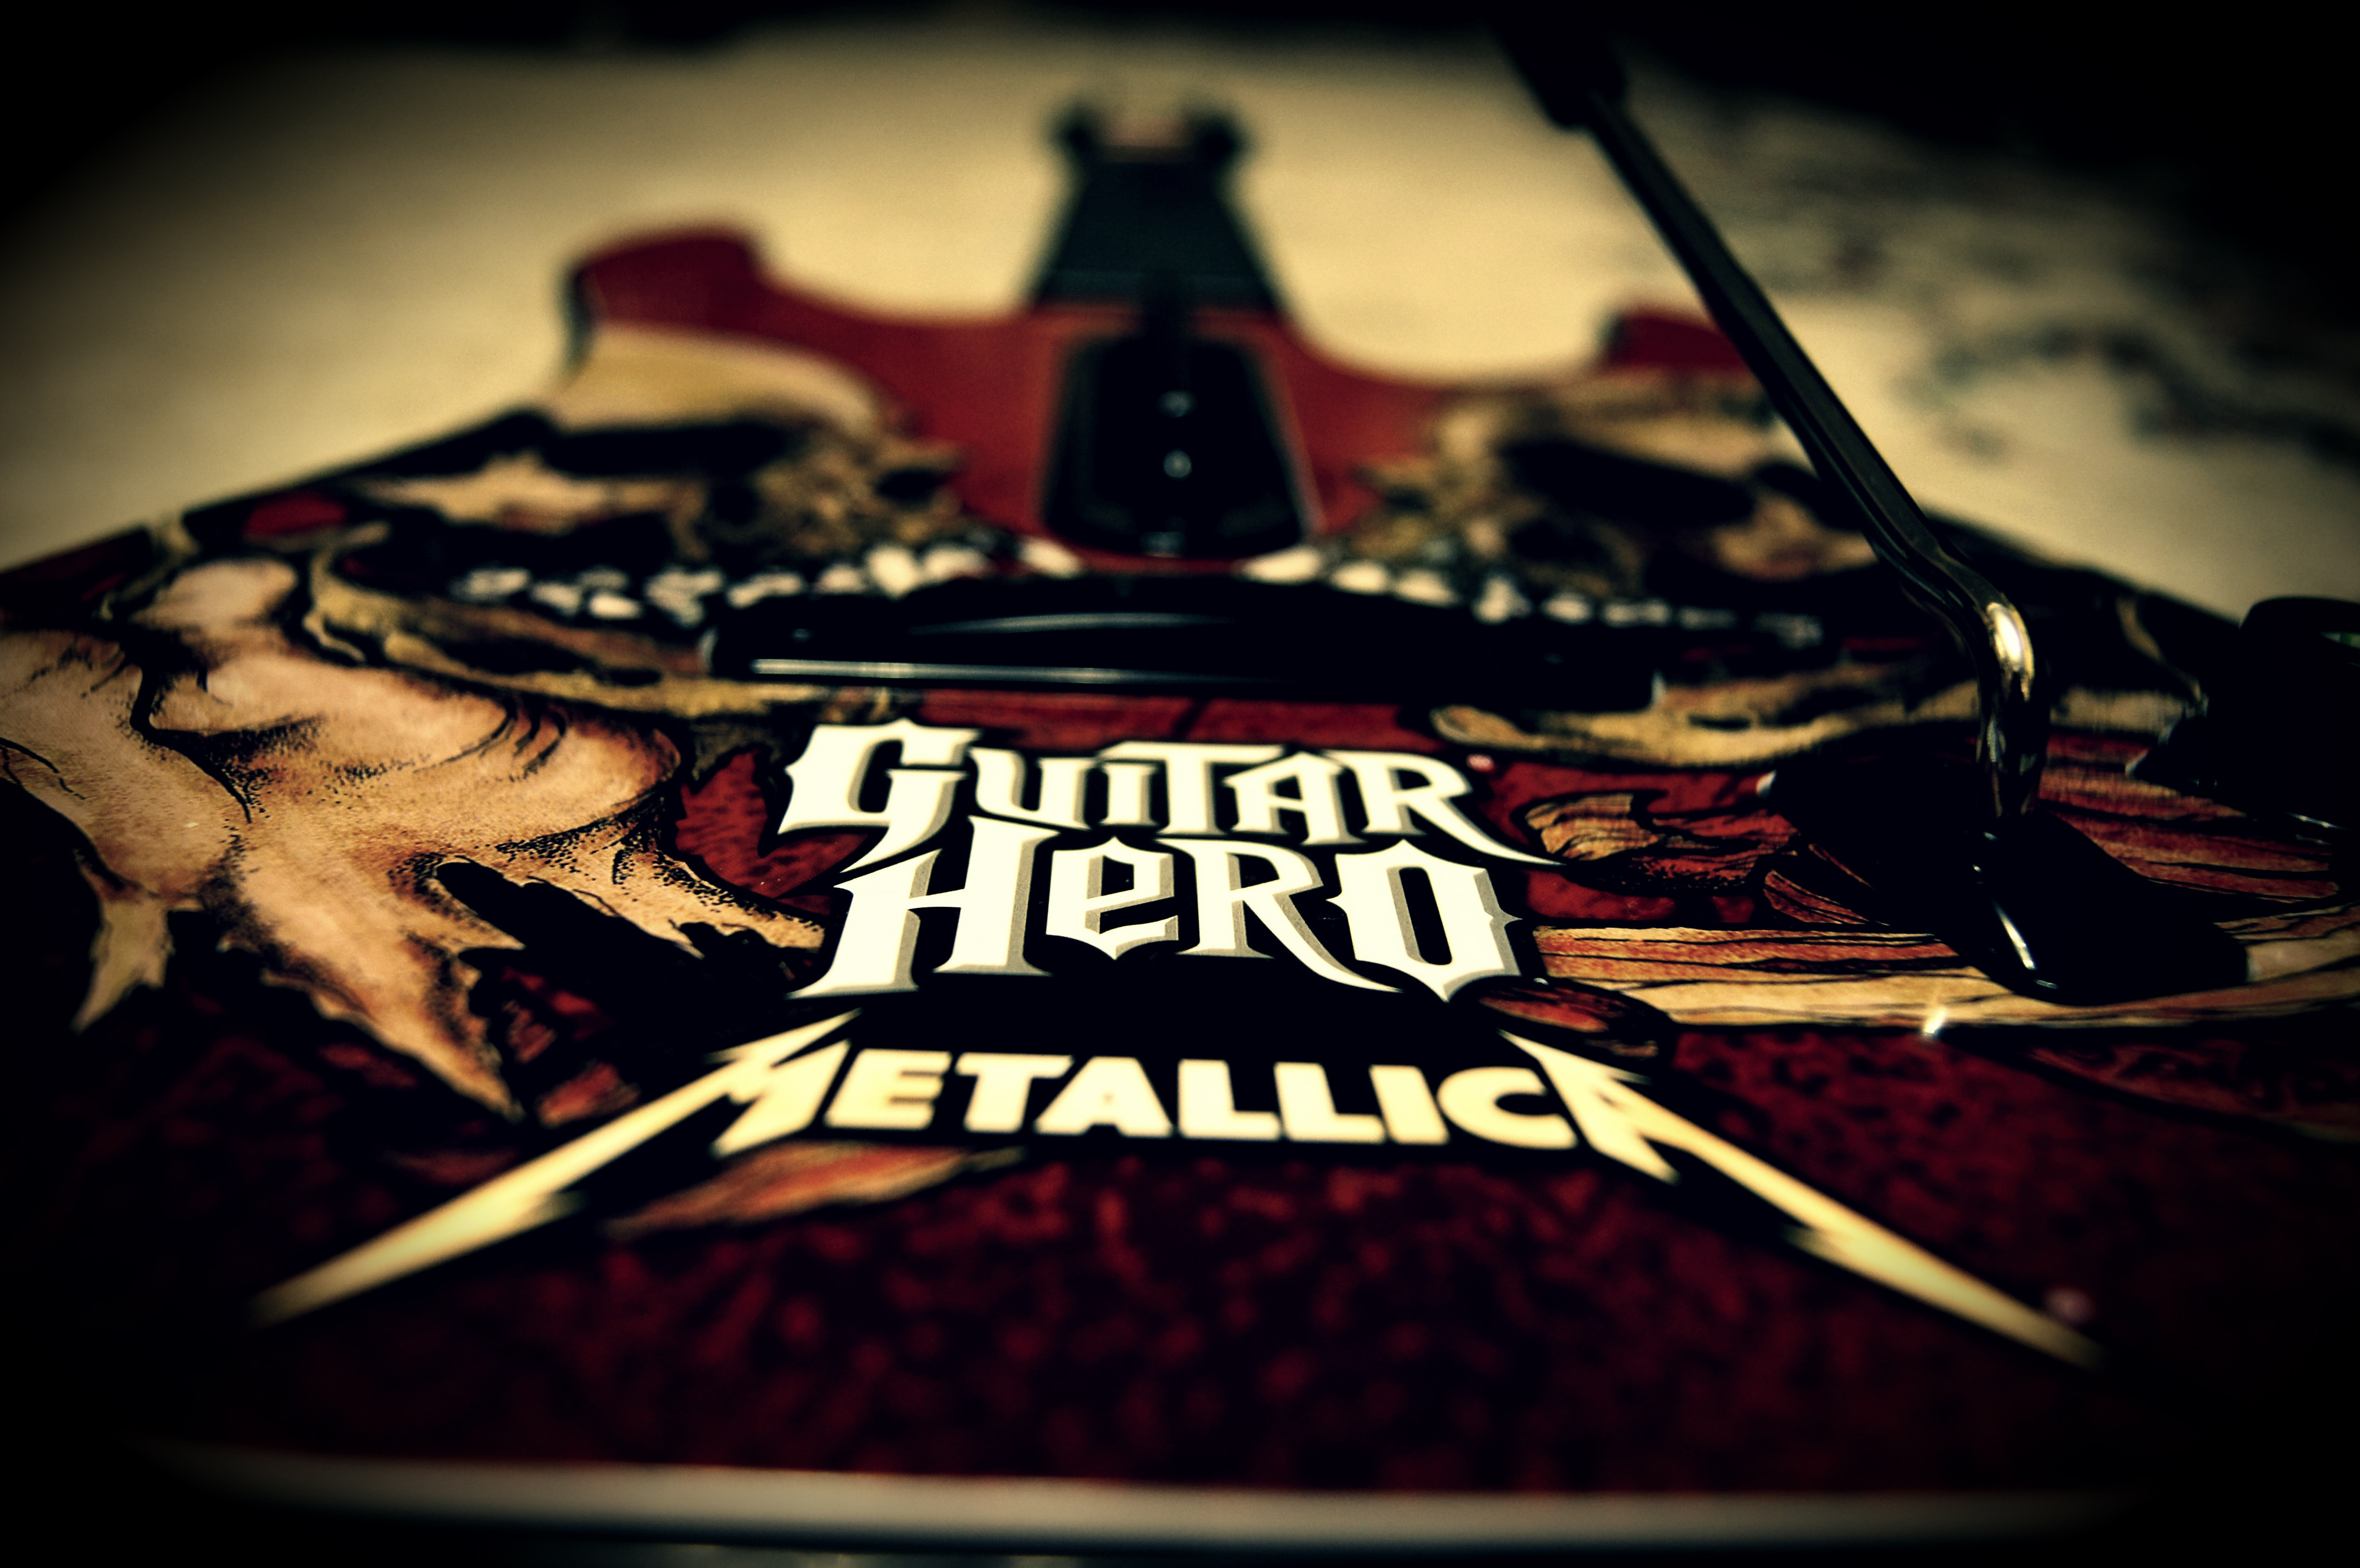 Guitar hero 3 download free